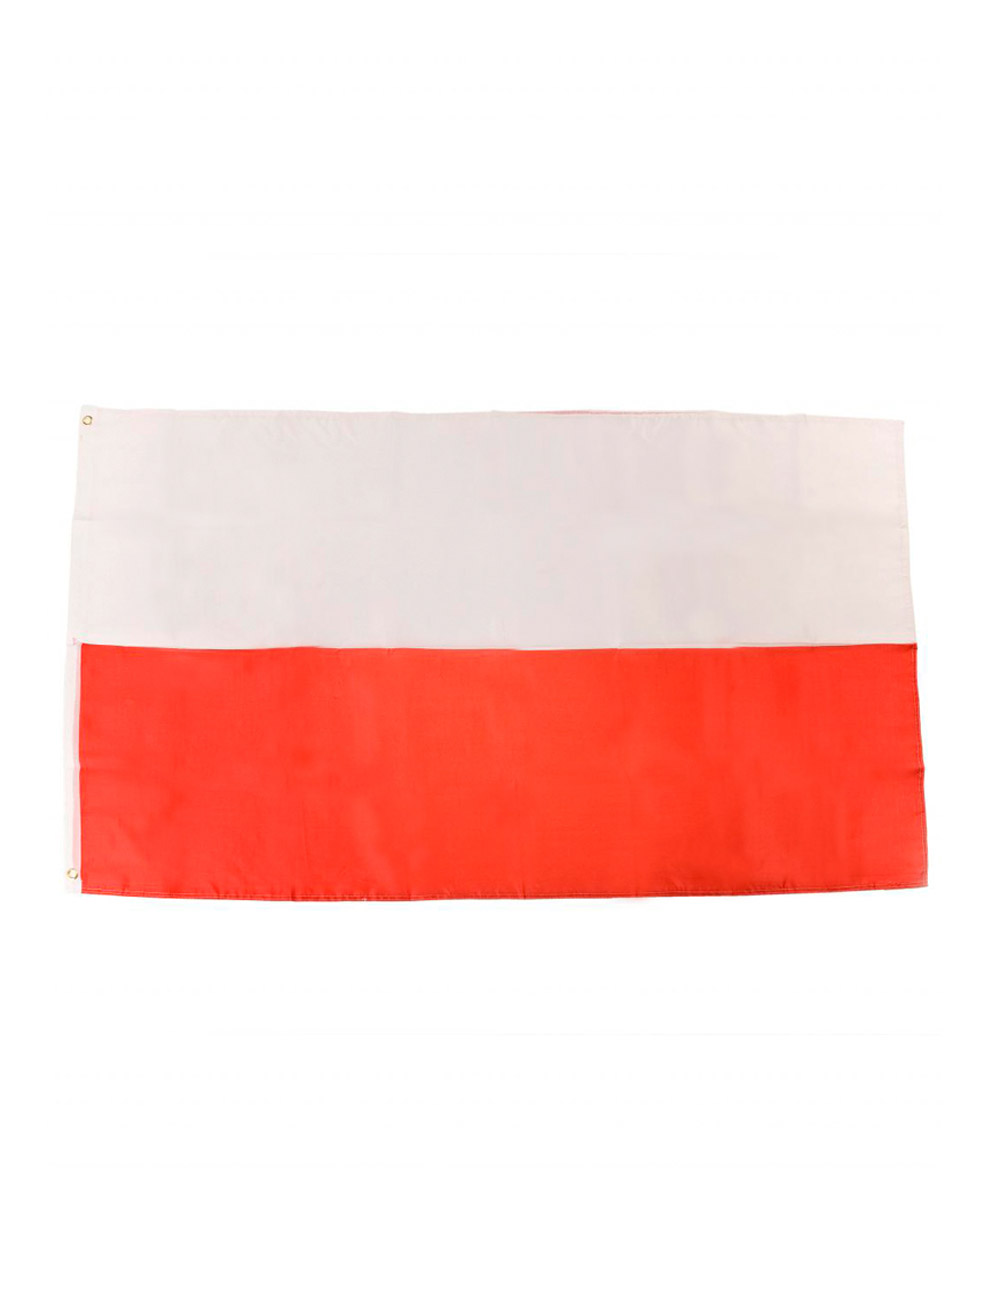 Flagge Polen 90 x 60 cm